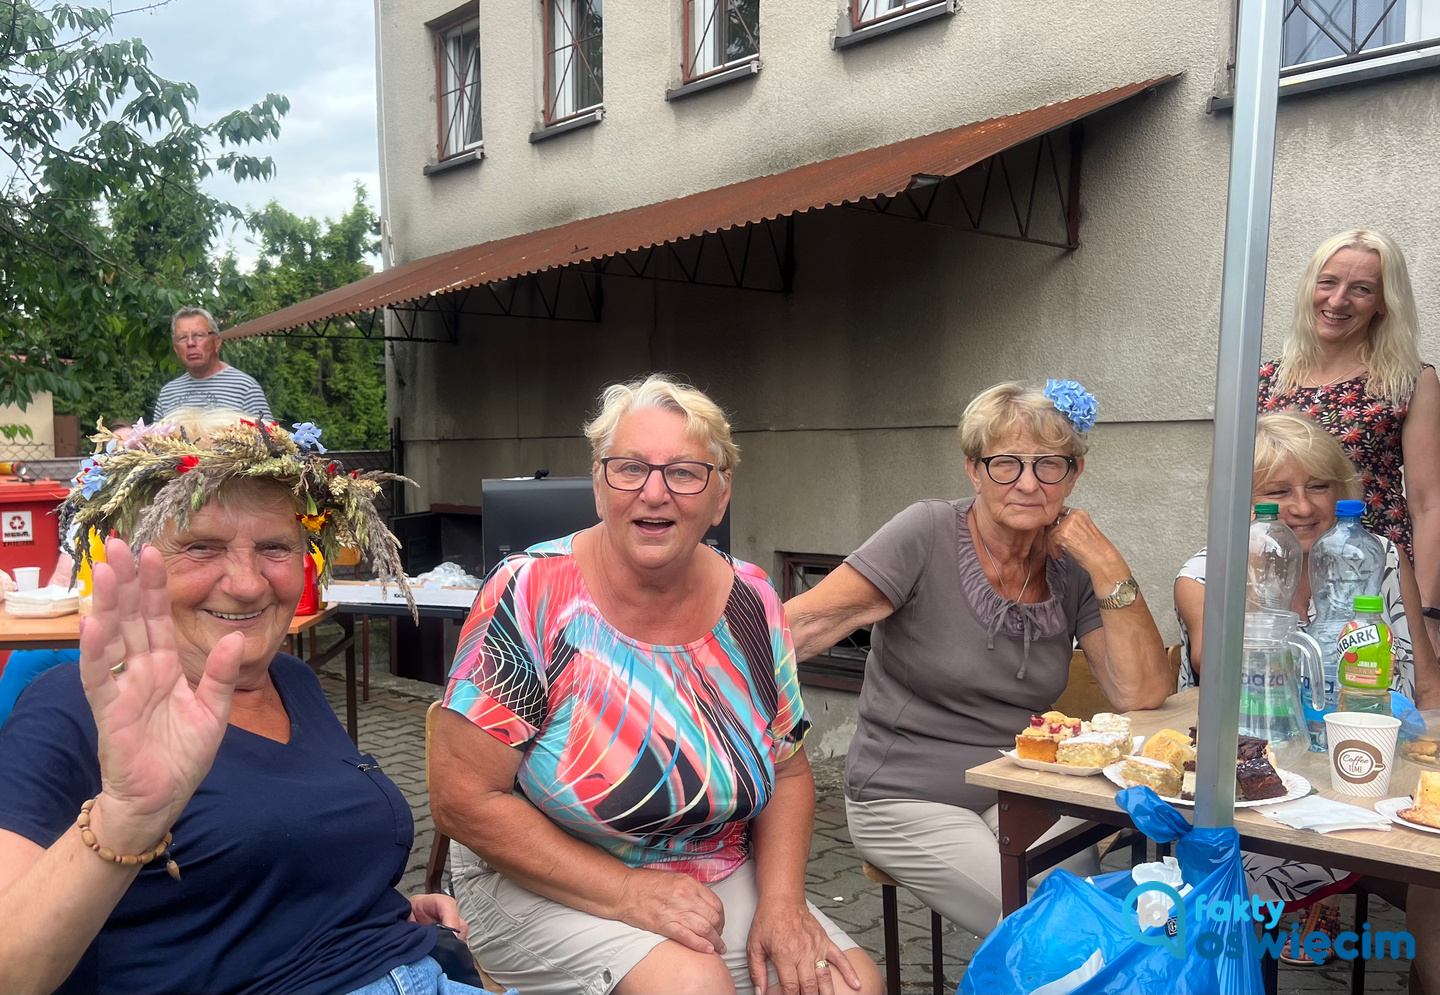 Stowarzyszenie Bratnich Serc zorganizowało piknik „Razem przez życie" w Babicach dla swoich podopiecznych i sympatyków.